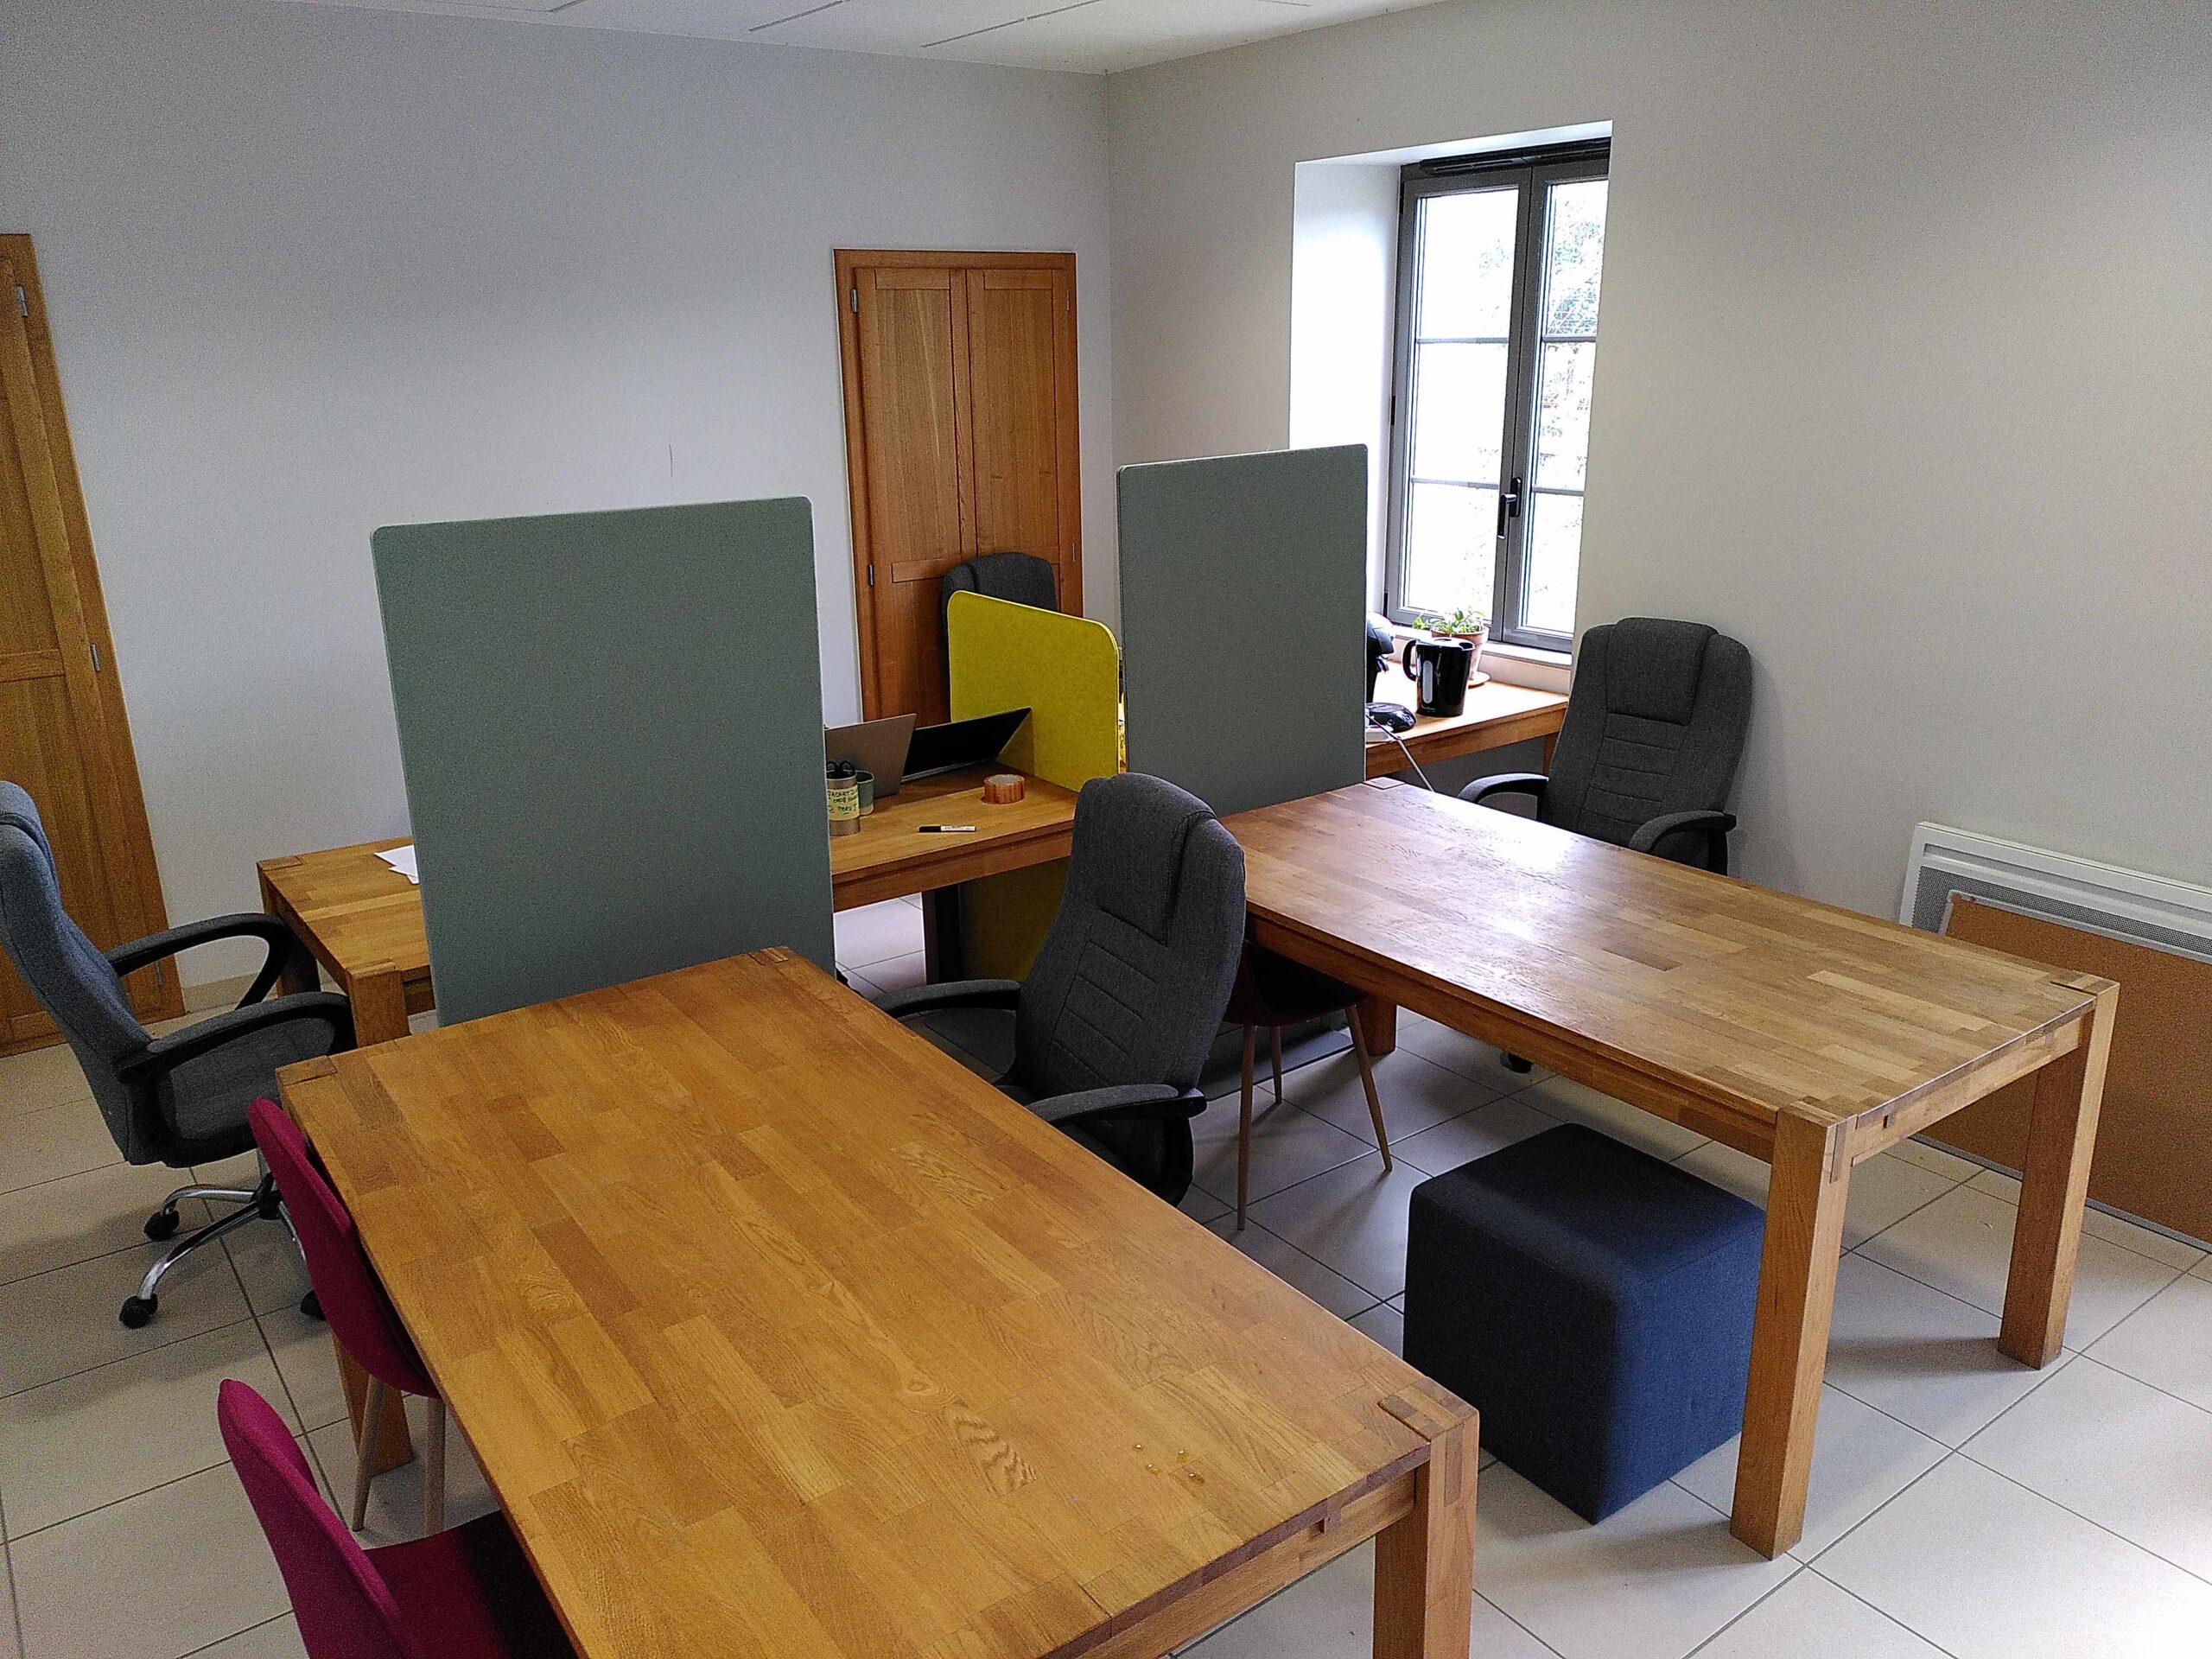 Image des locaux du Sonneur : bureaux en bois, chaises de bureau confortables